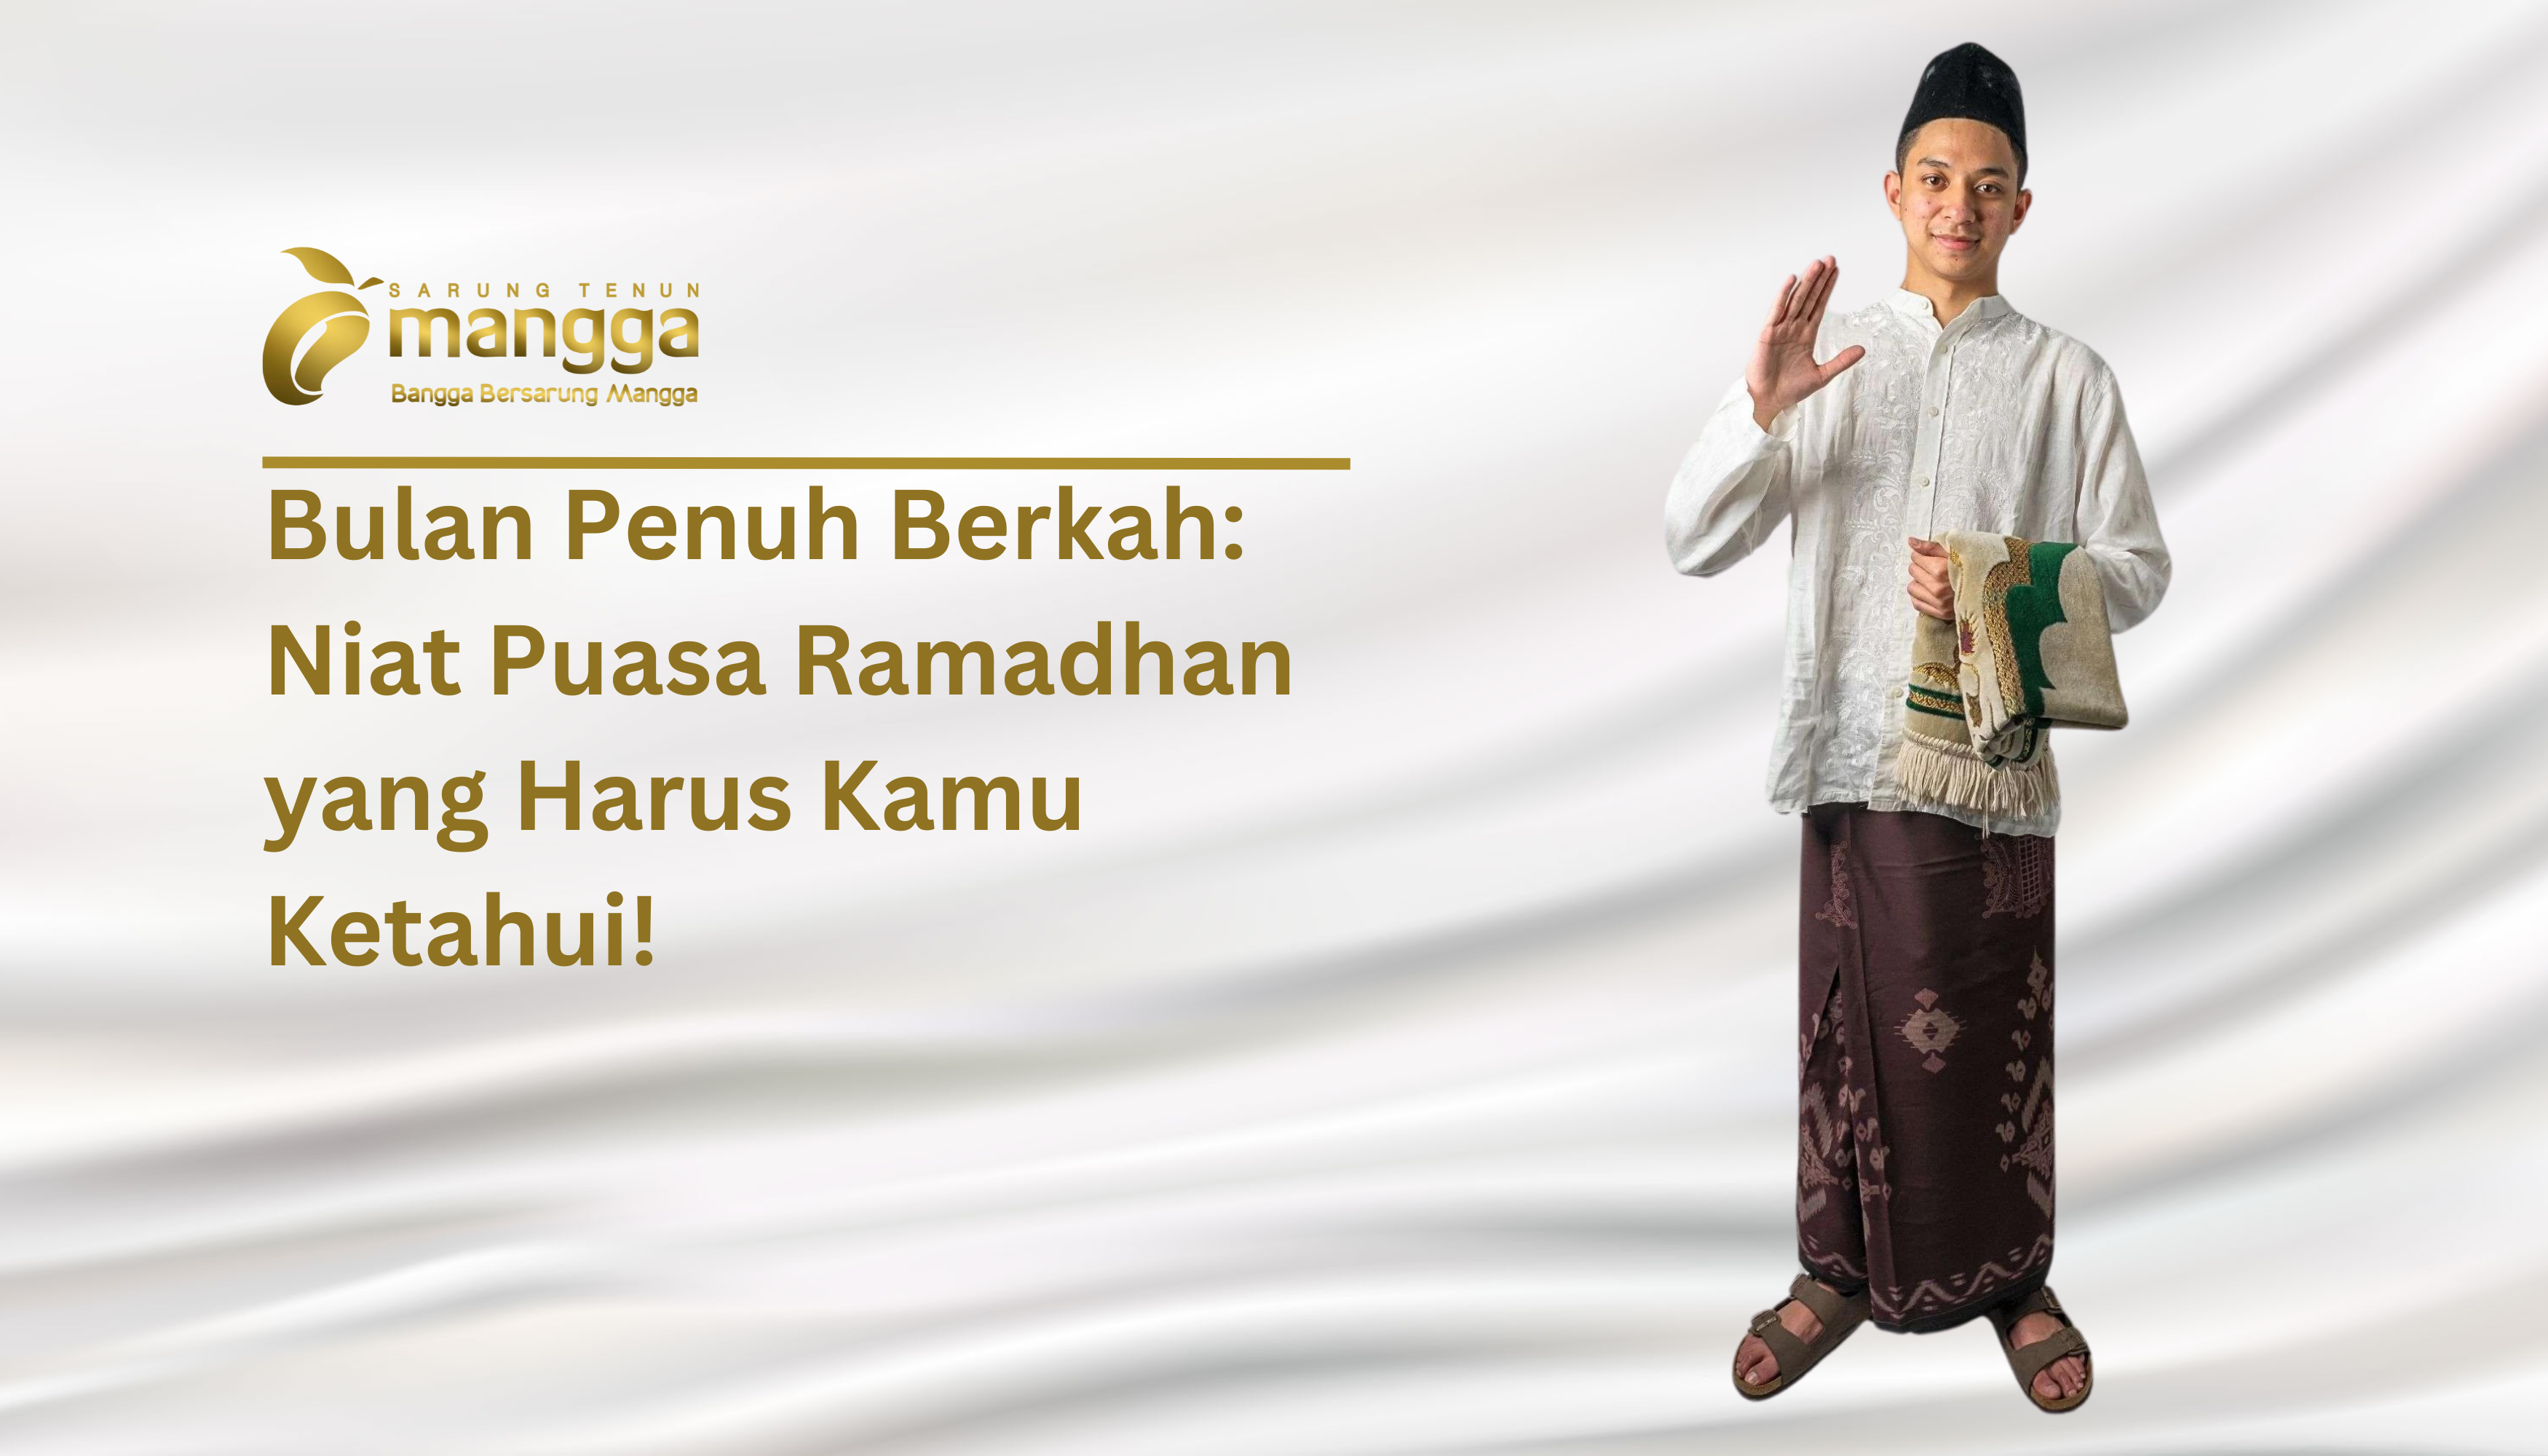 Bulan Penuh Berkah Niat Puasa Ramadhan yang Harus Kamu Ketahui!